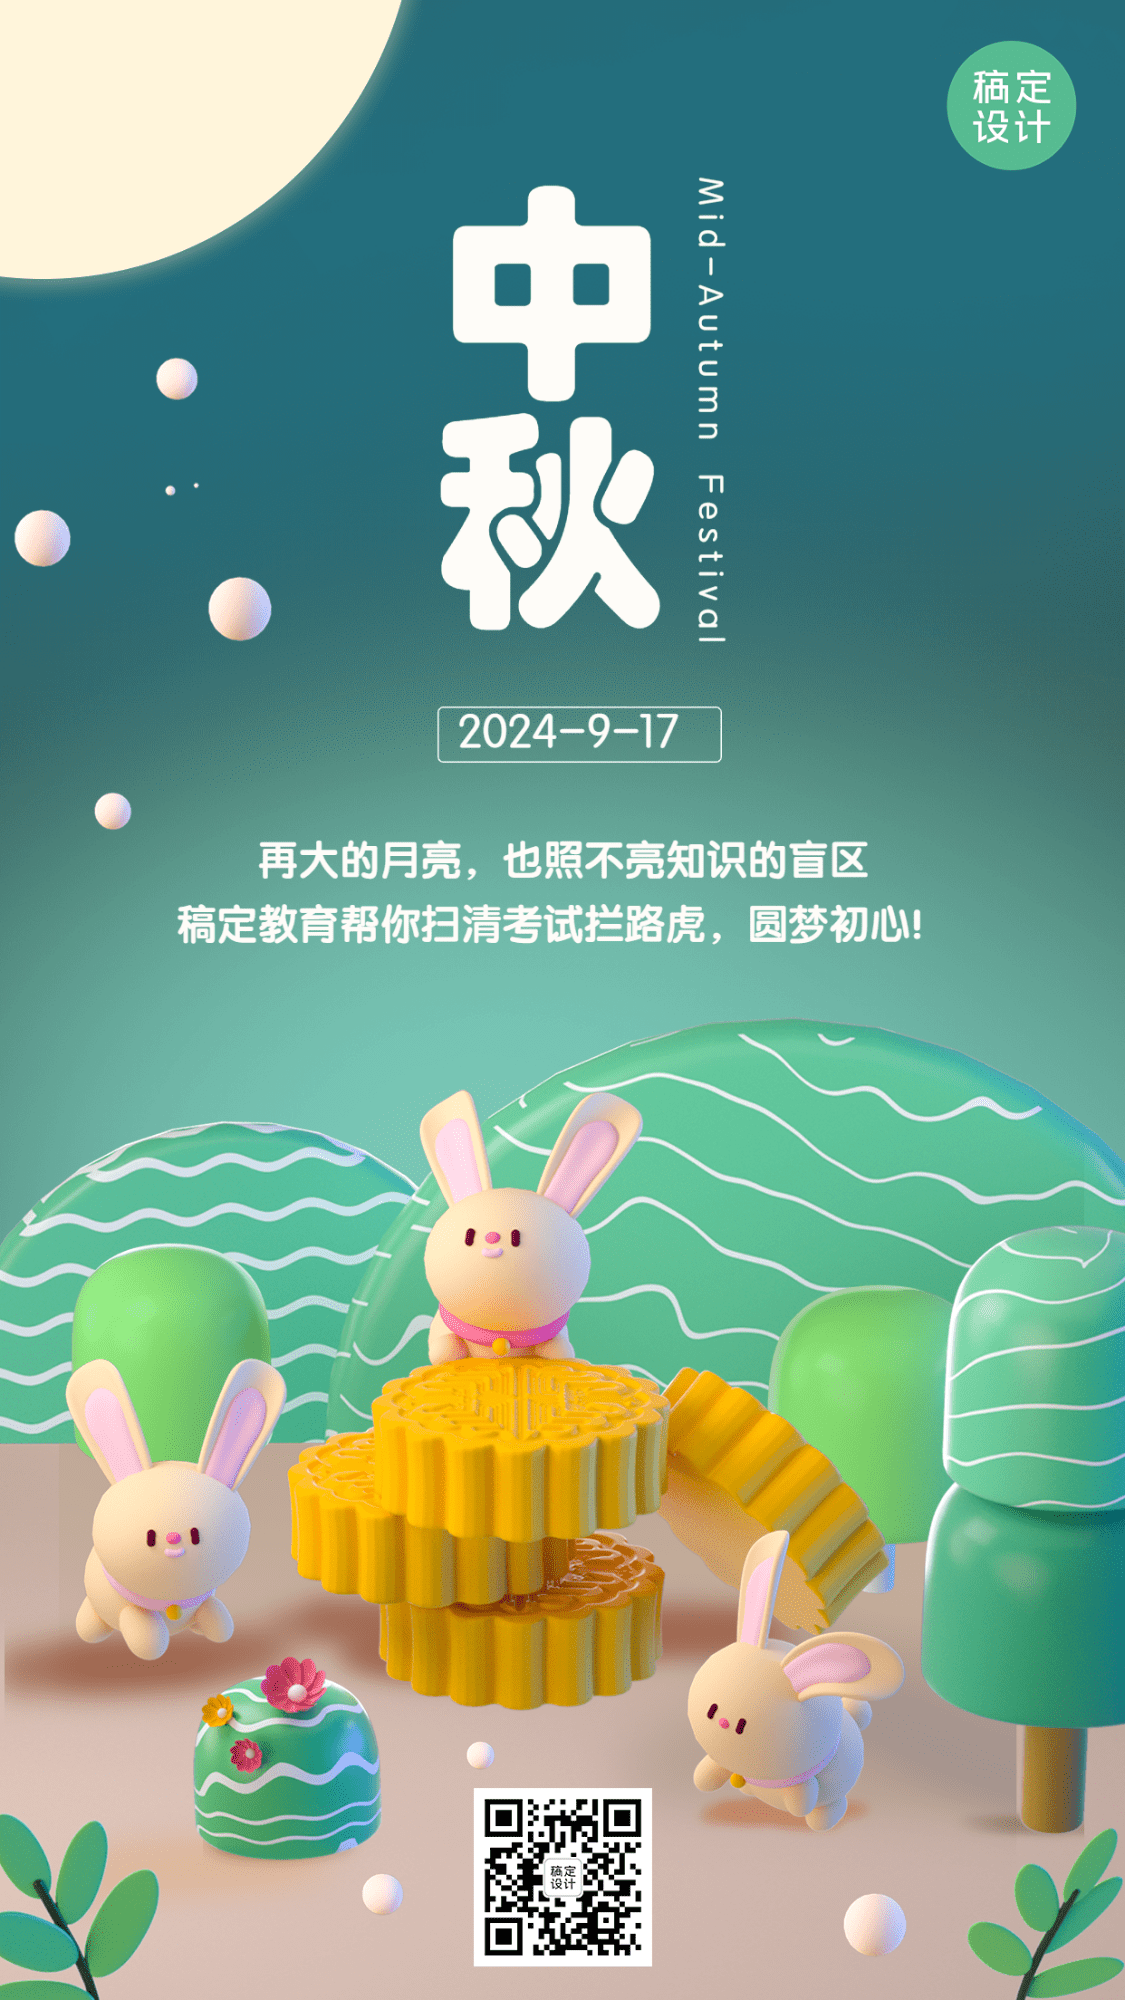 中秋节教育培训节日祝福插画手机海报